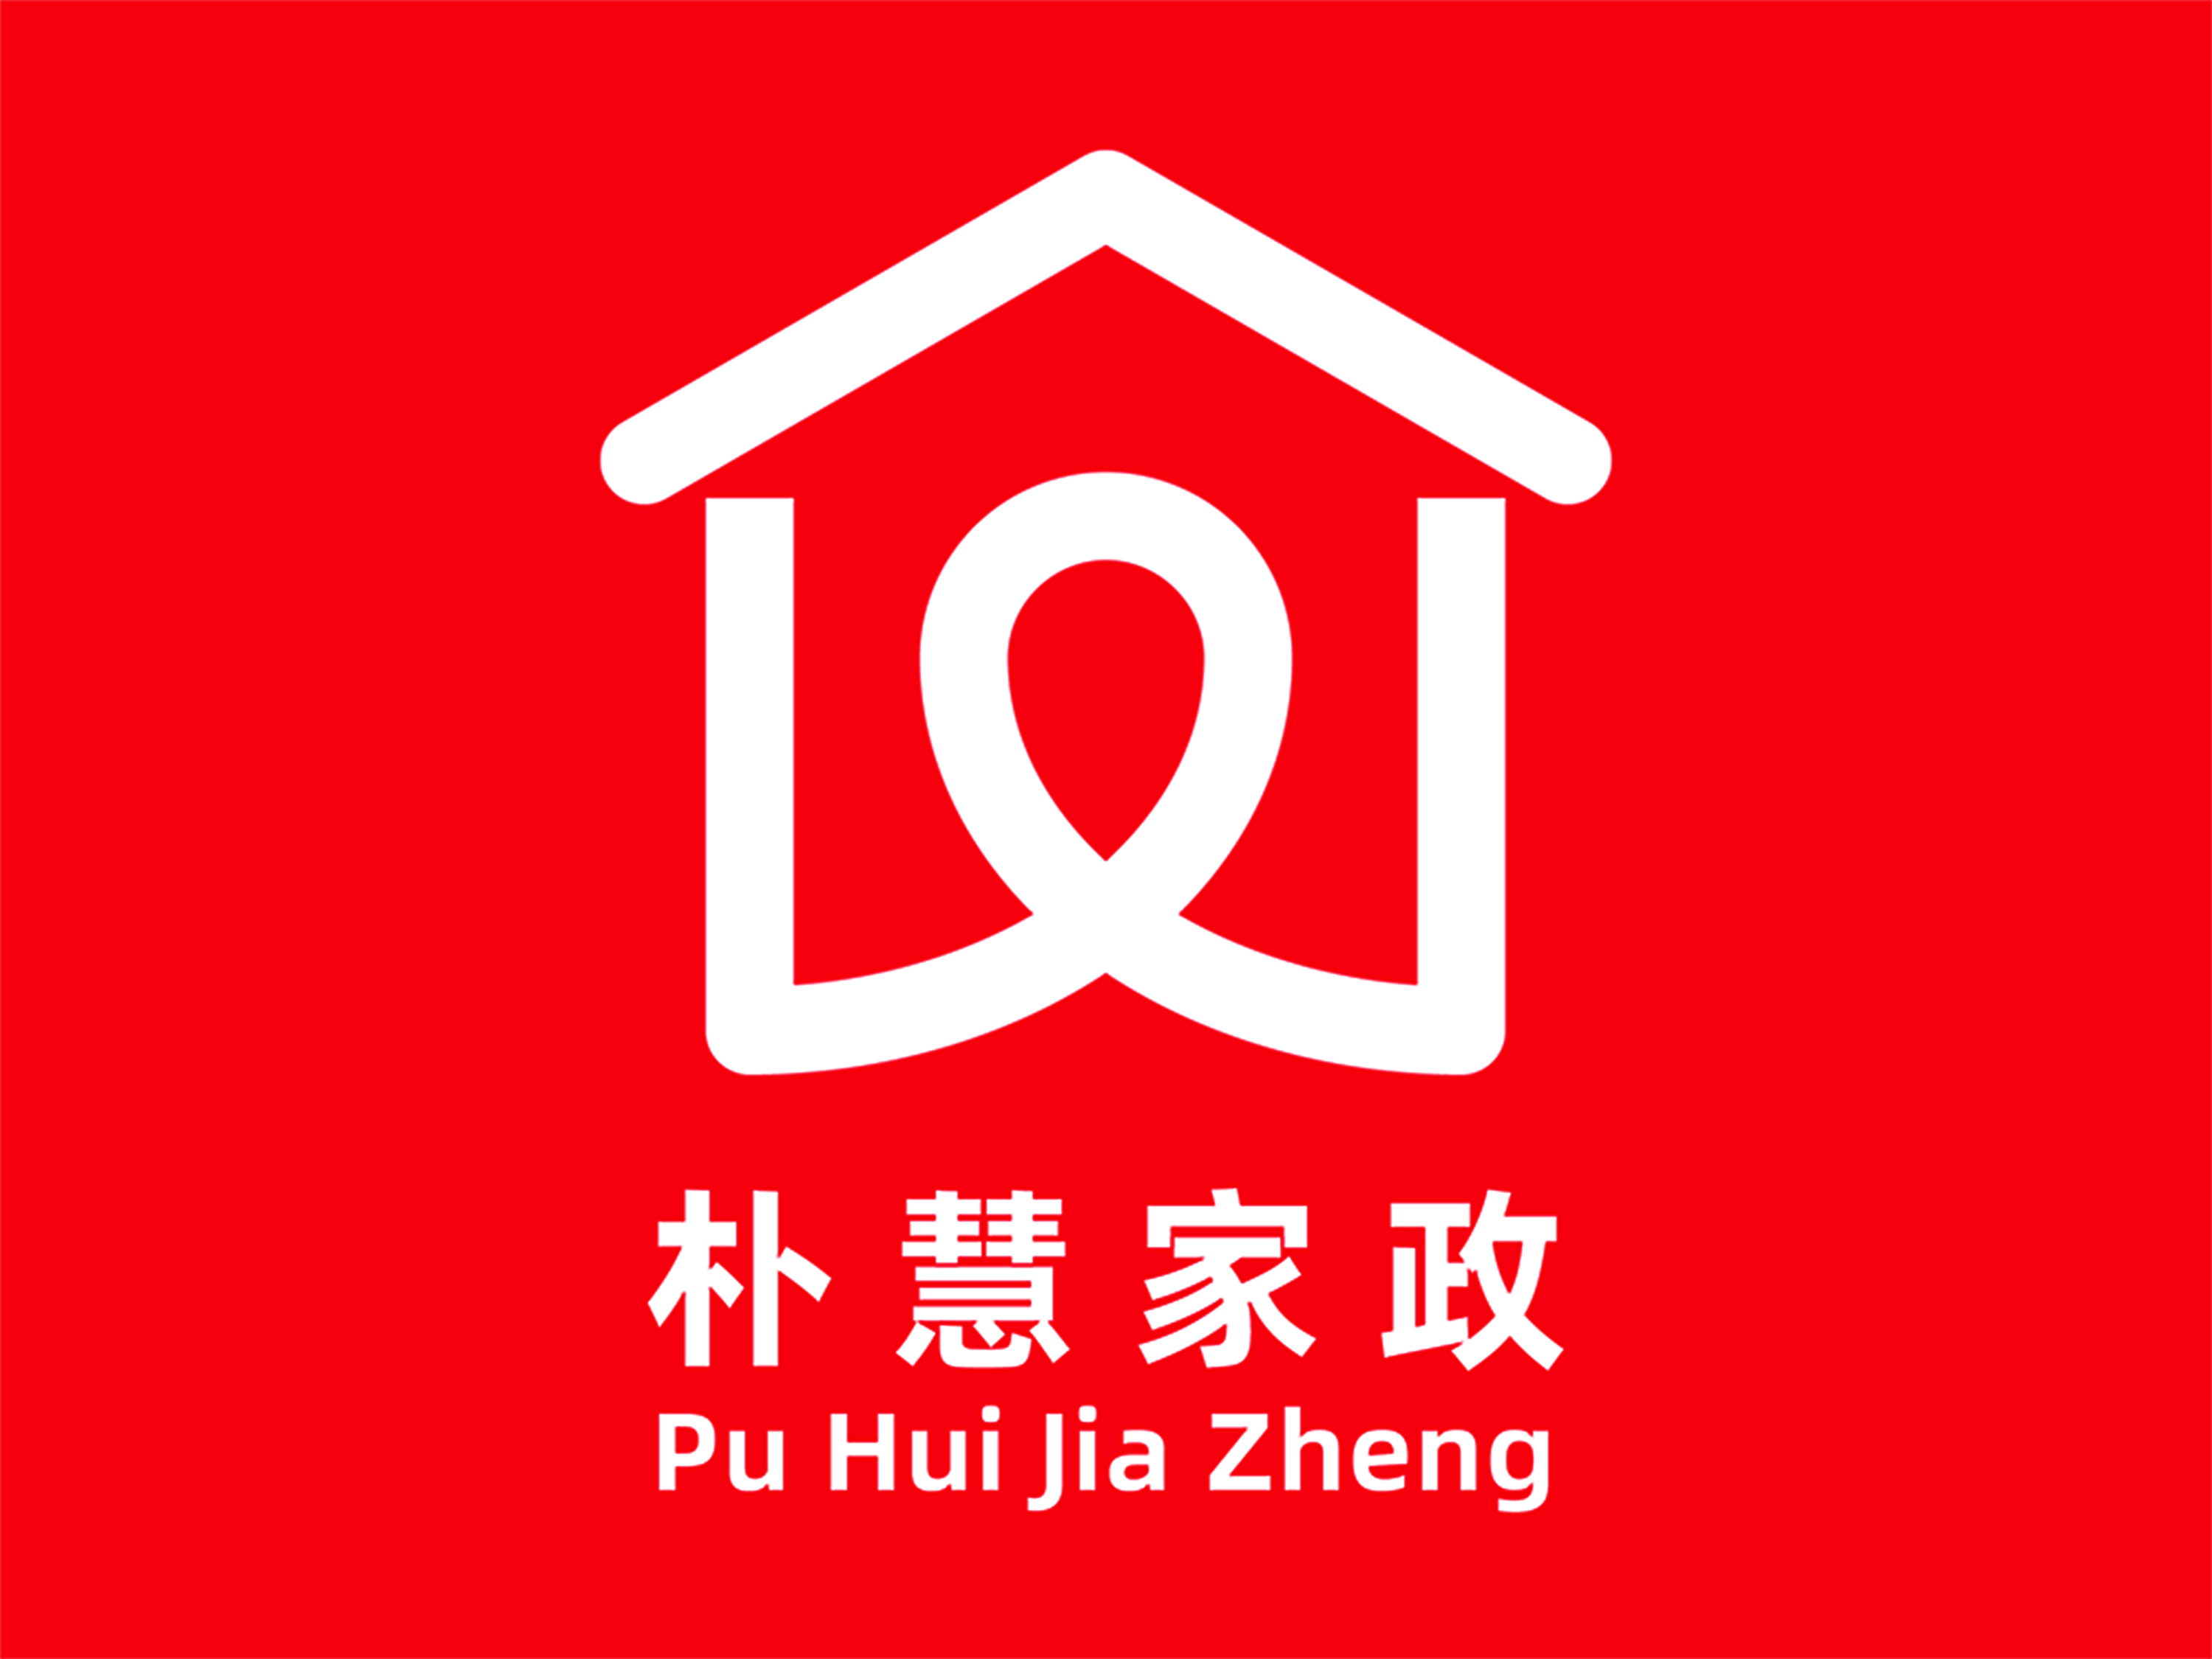 家政logo设计及寓意图片